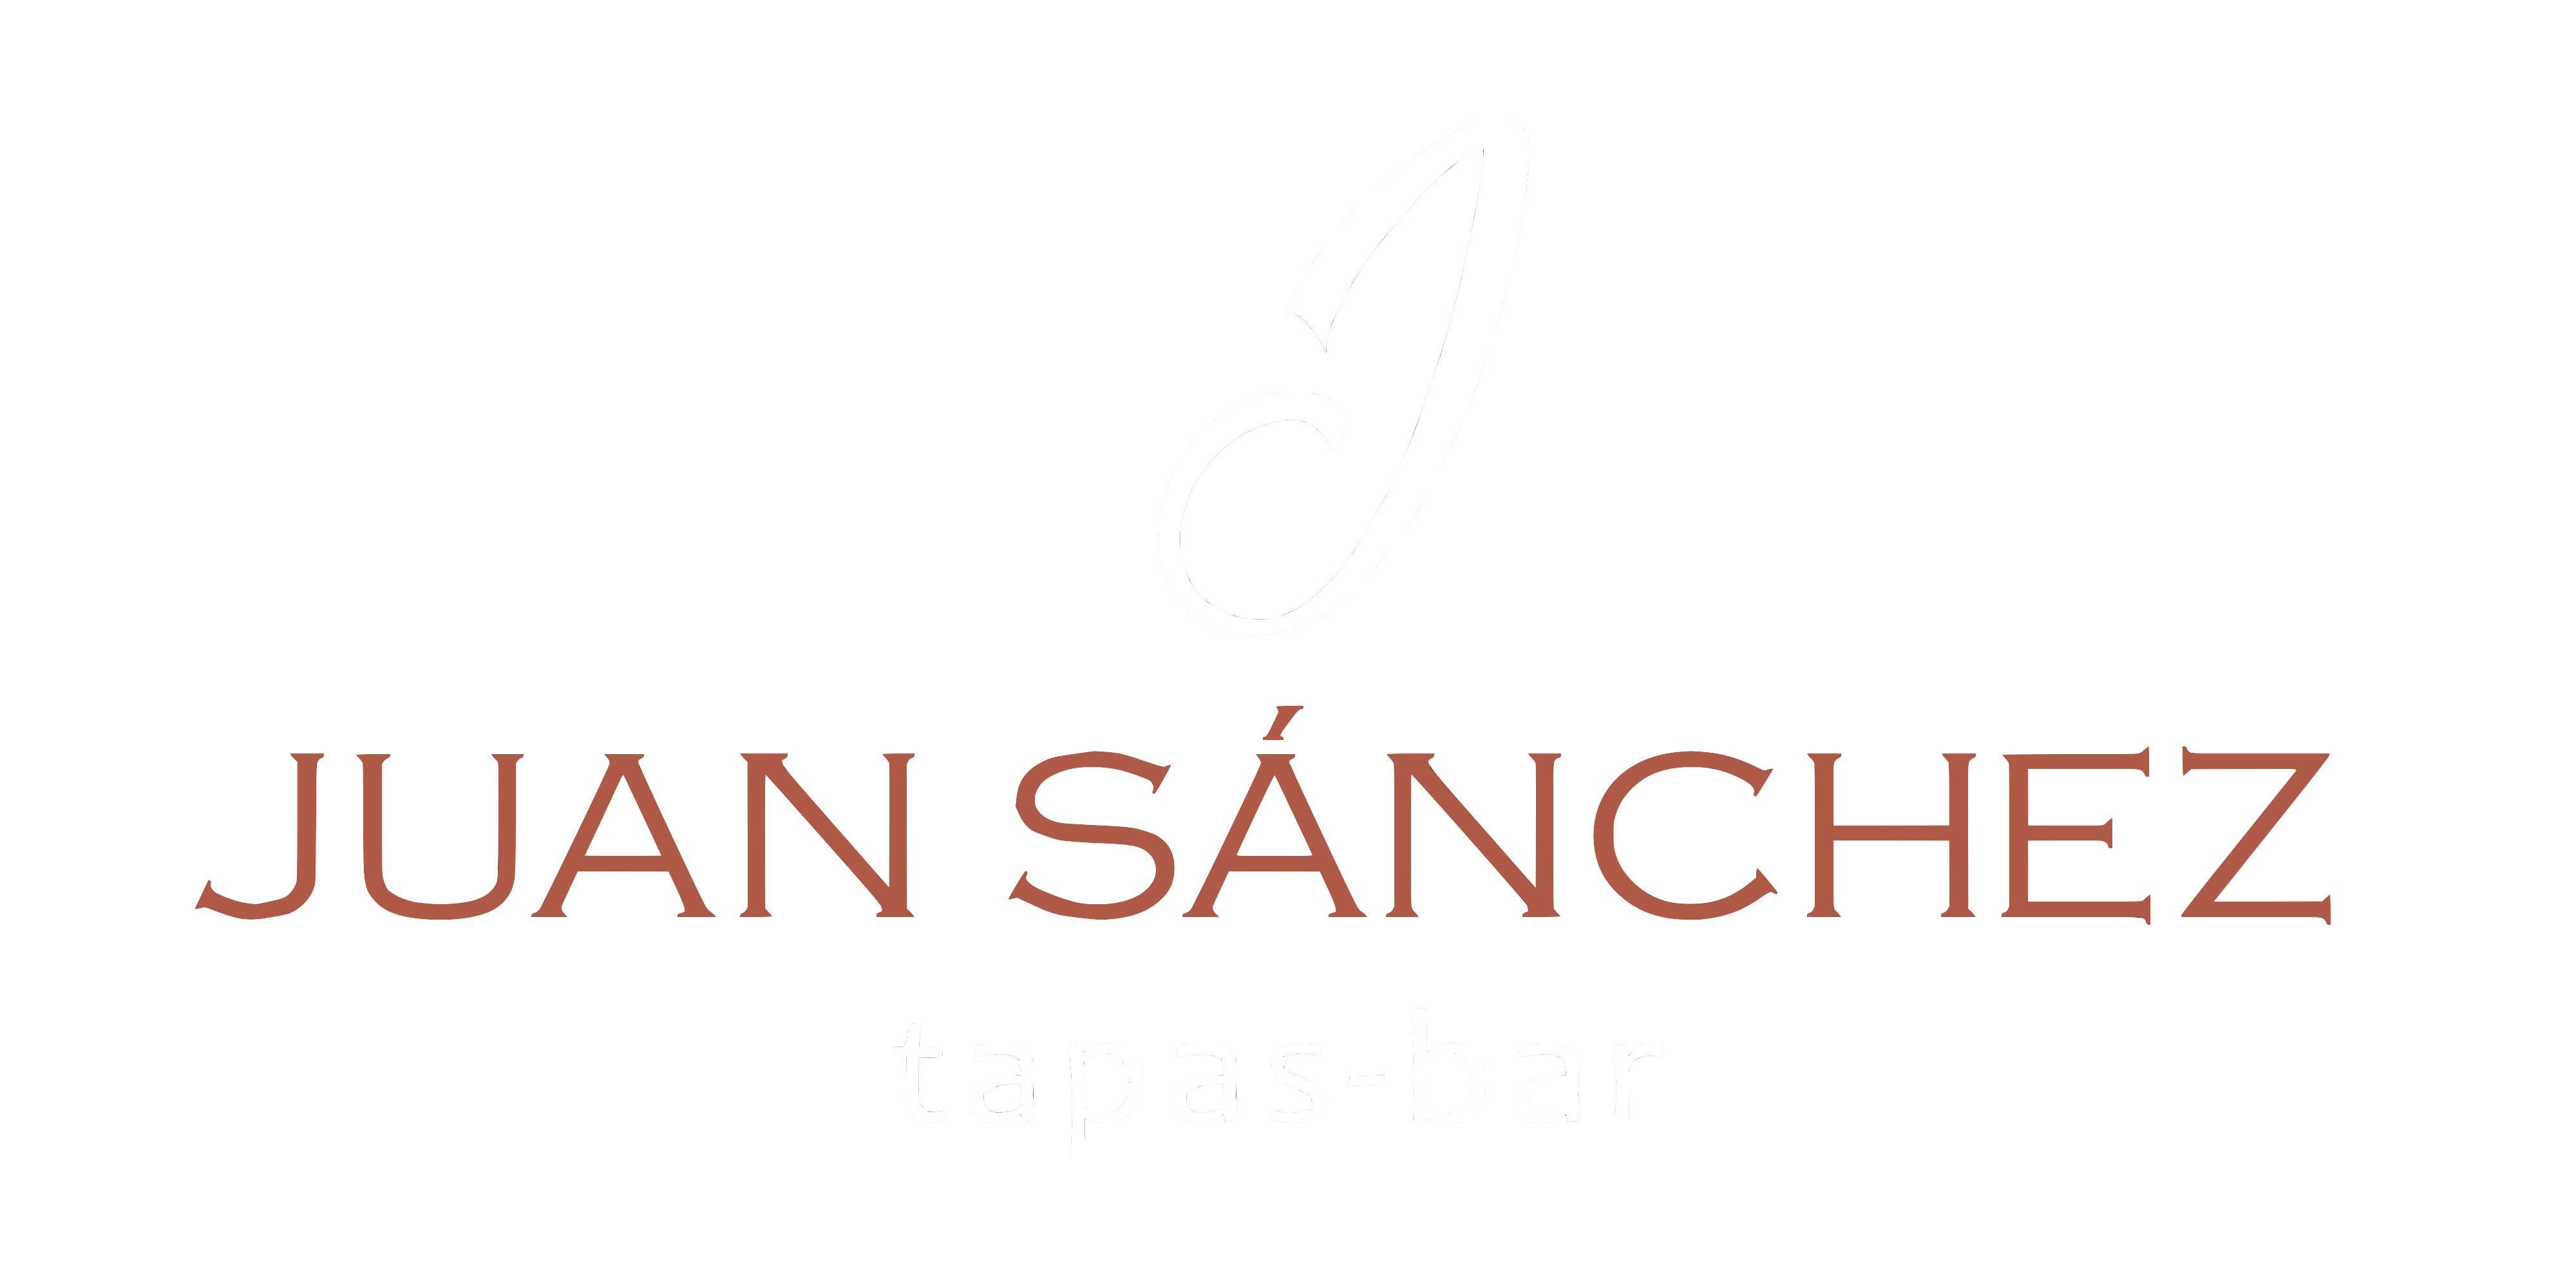 Juan Sánchez tapas-bar